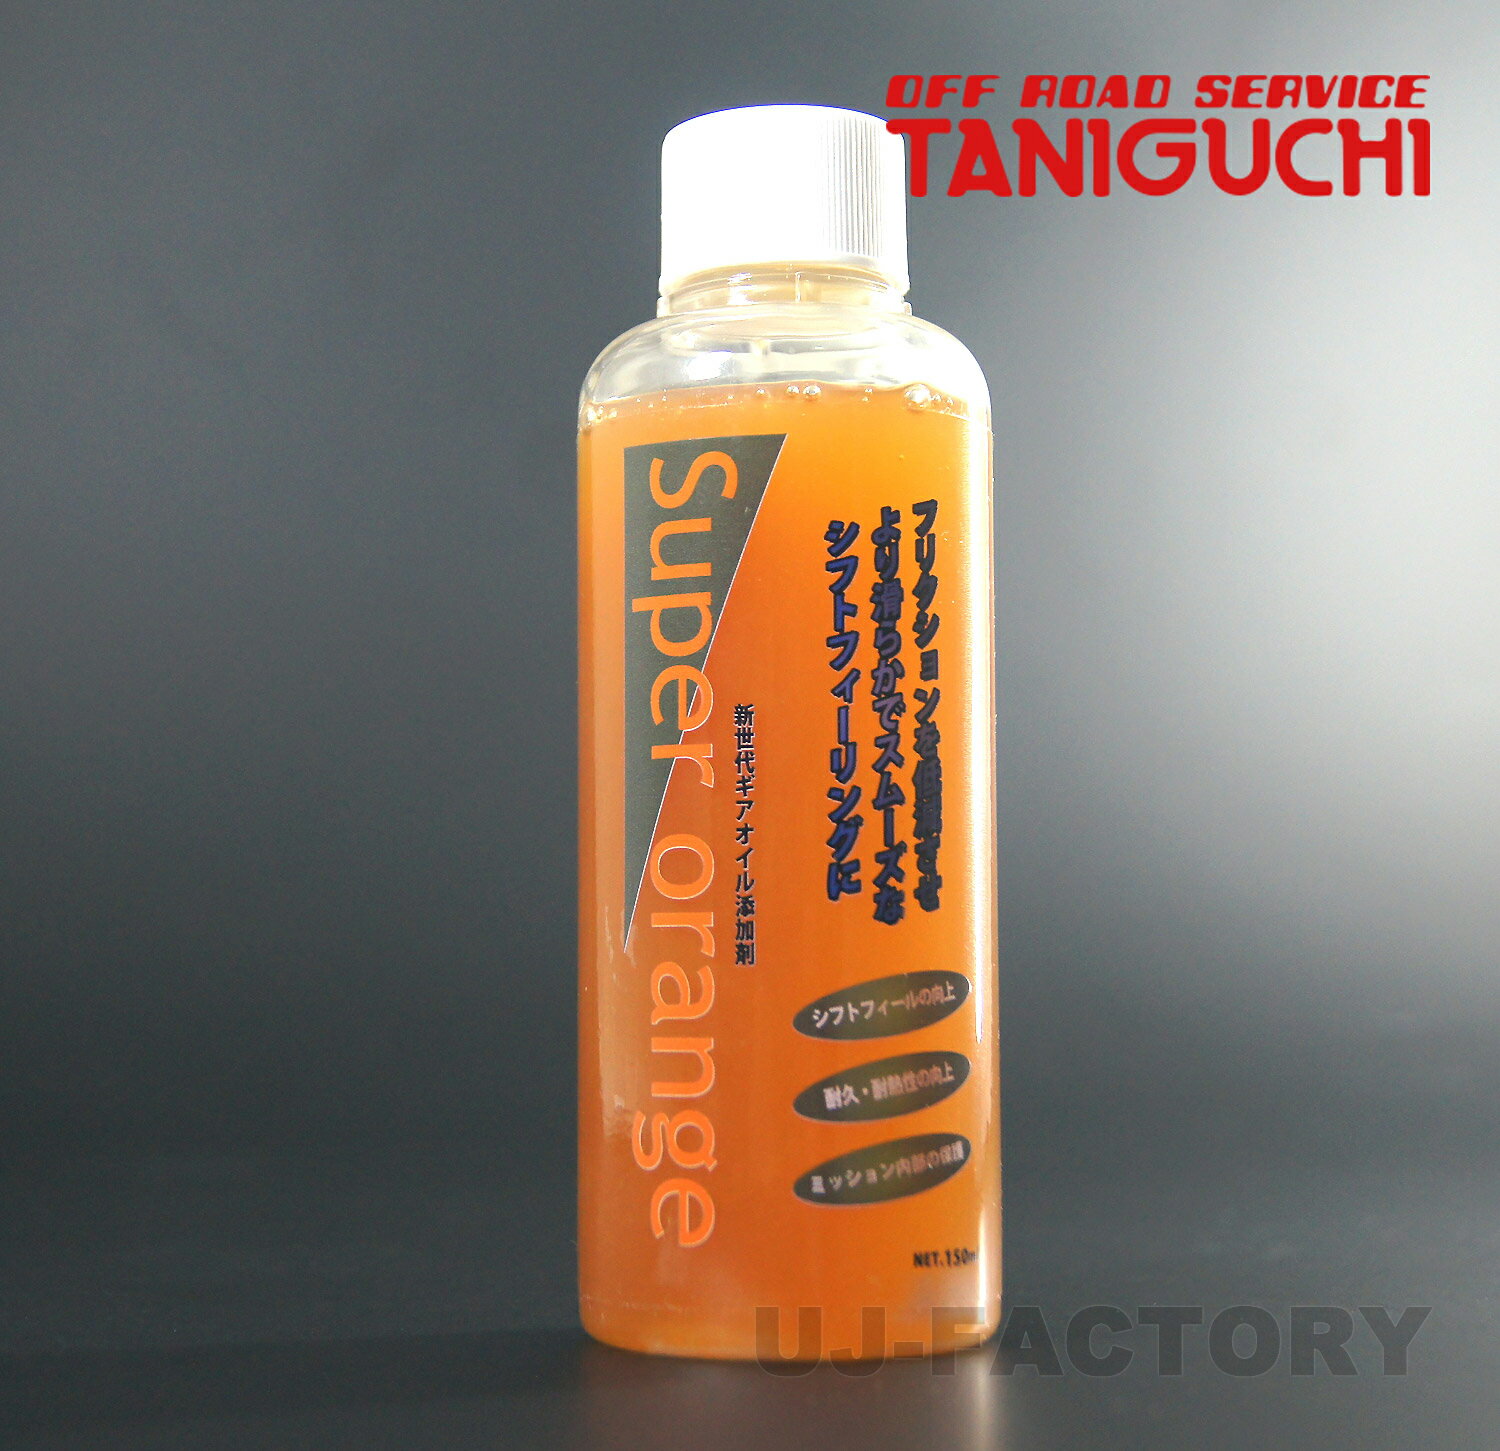 【ORS タニグチ】 スーパーオレンジ ミッションオイル添加剤 150ml ジムニー 汎用 OFF ROAD SERVICE TANIGUCHI